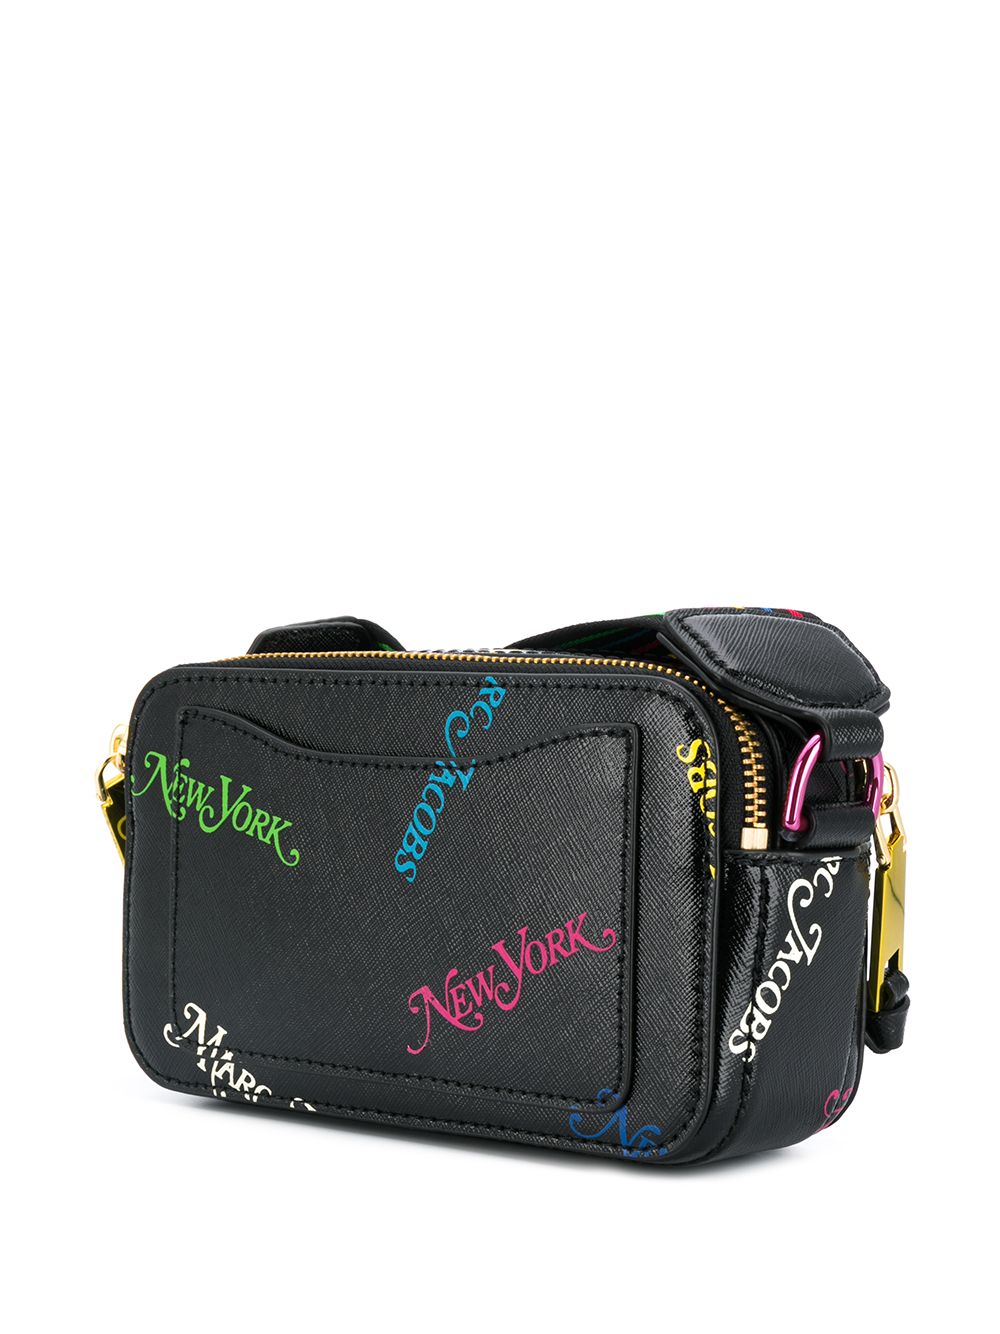 Marc Jacobs Snapshot bag - Bags & Luggage - New York, New York